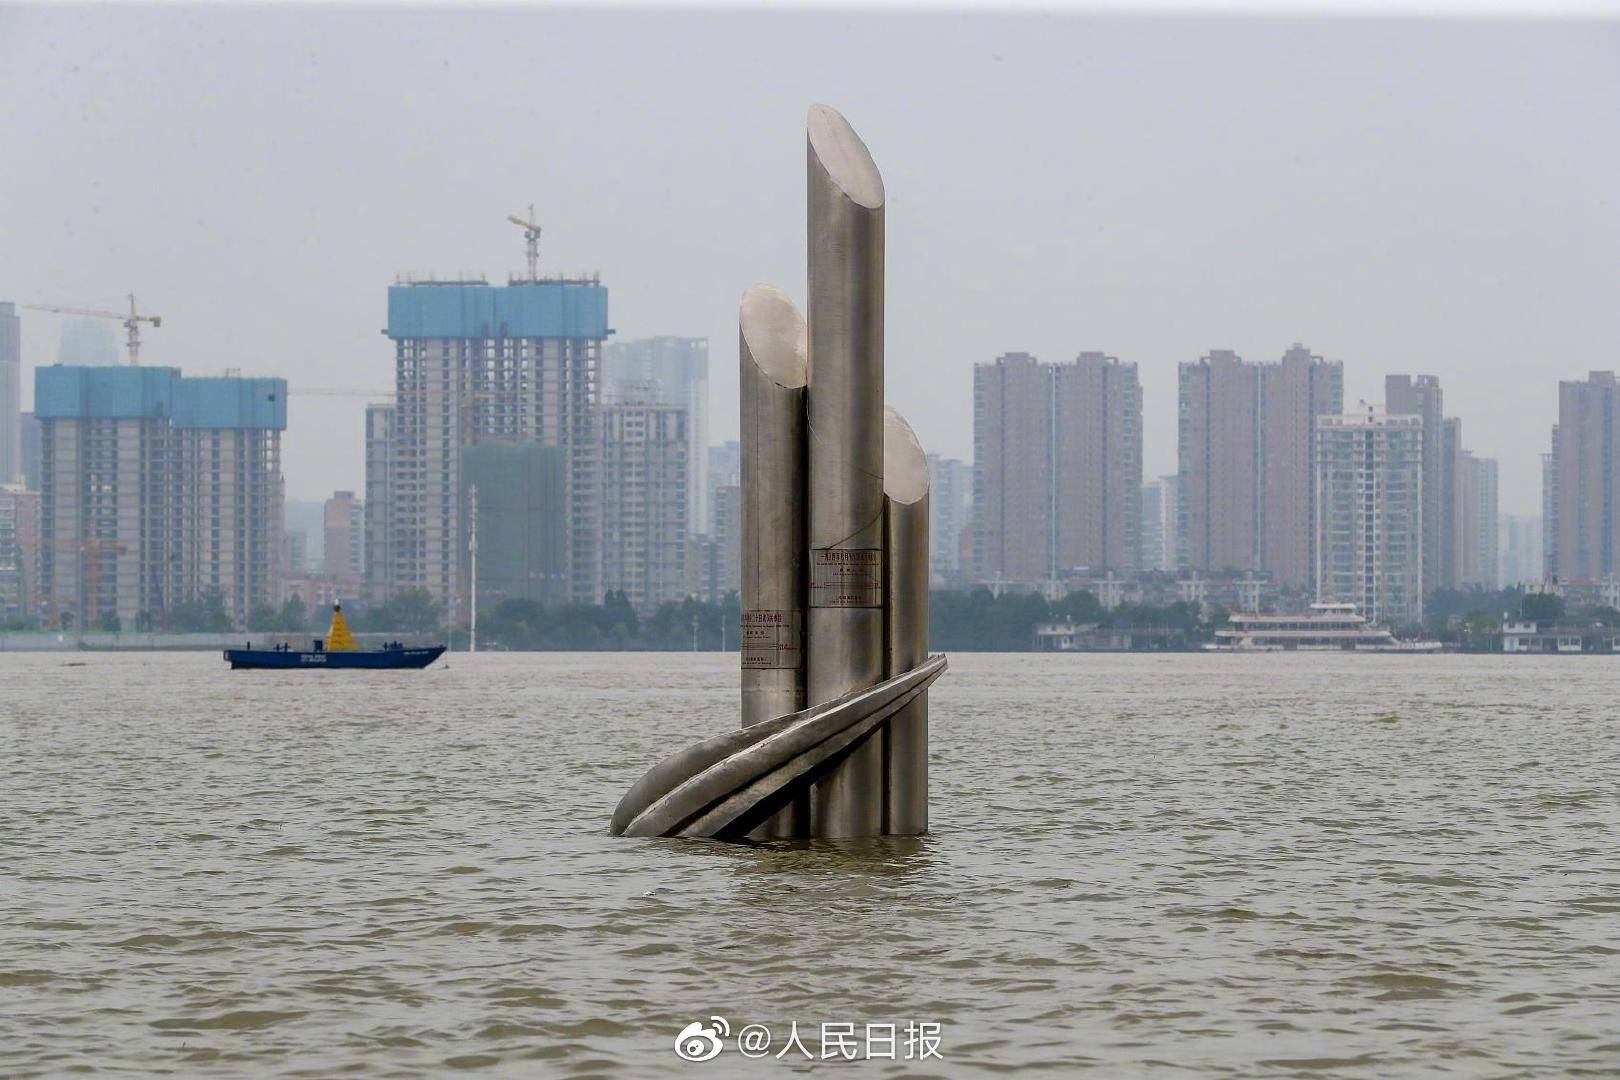 长江流域平均降雨近60年同期最多  太湖水位仍处于超警状态